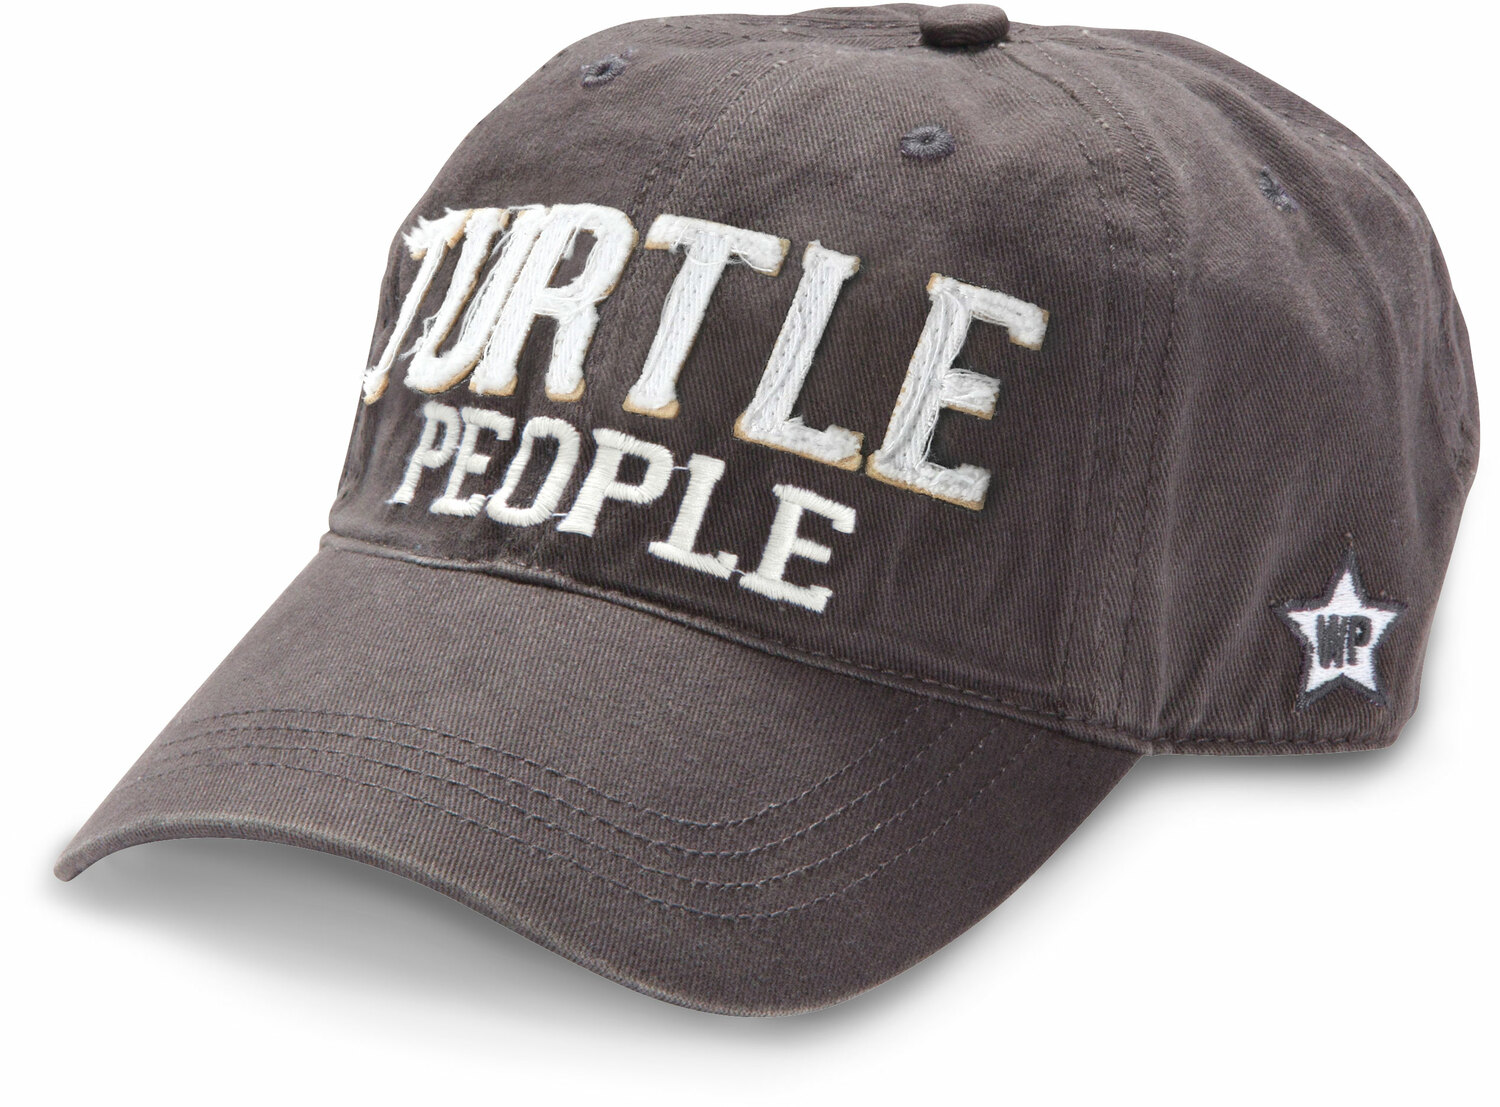 Turtle People by We People - Turtle People - Dark Gray Adjustable Hat